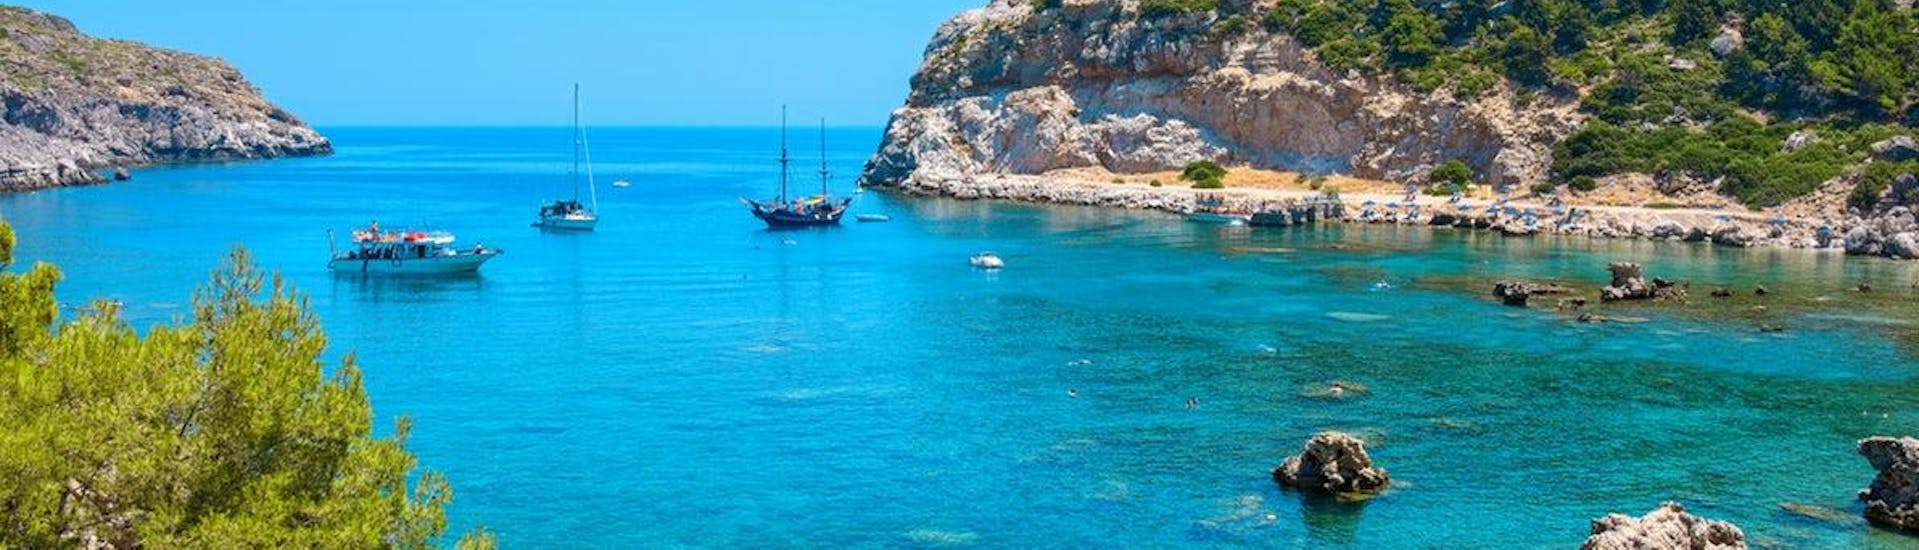 La baie que vous visiterez grâce à notre Balade privée en bateau aux sources Kallithea depuis Rhodes avec BOSS Cruises.